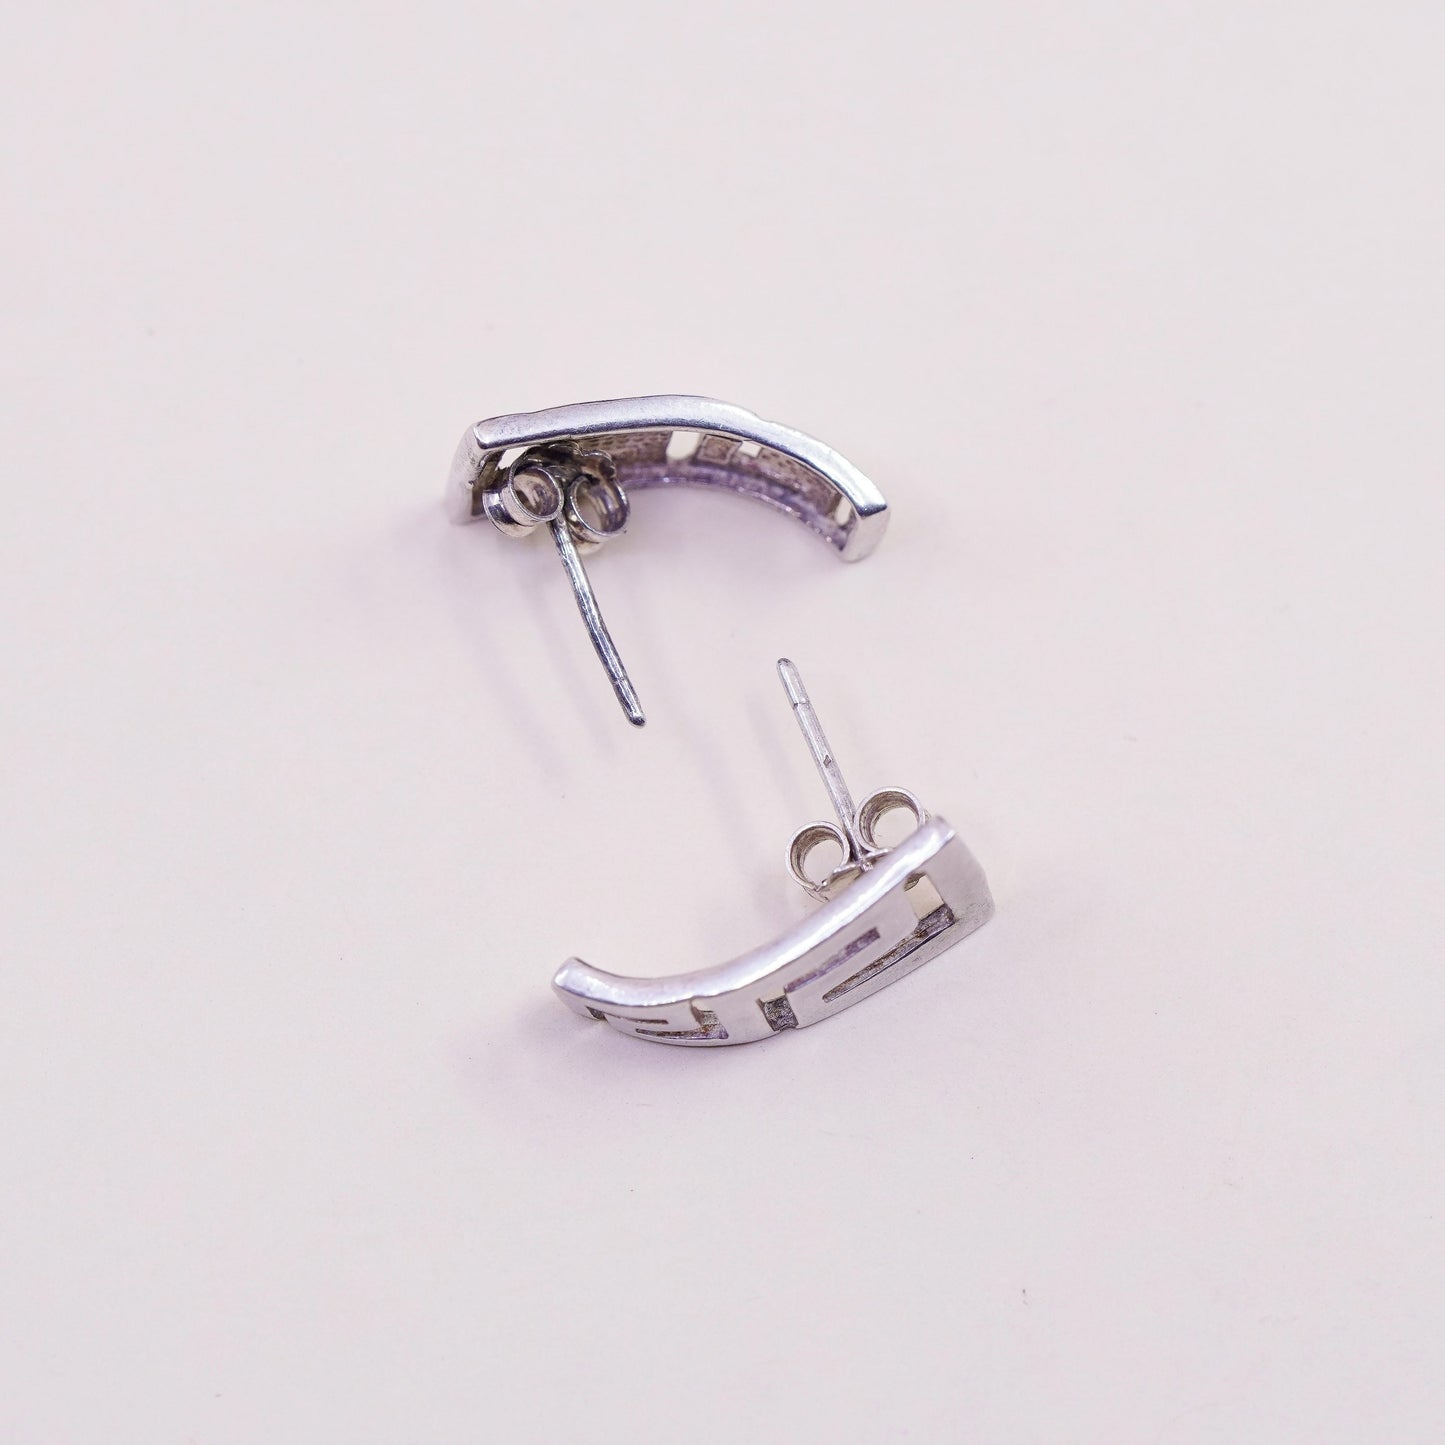 Vintage Sterling silver handmade earrings, 925 Greek key studs